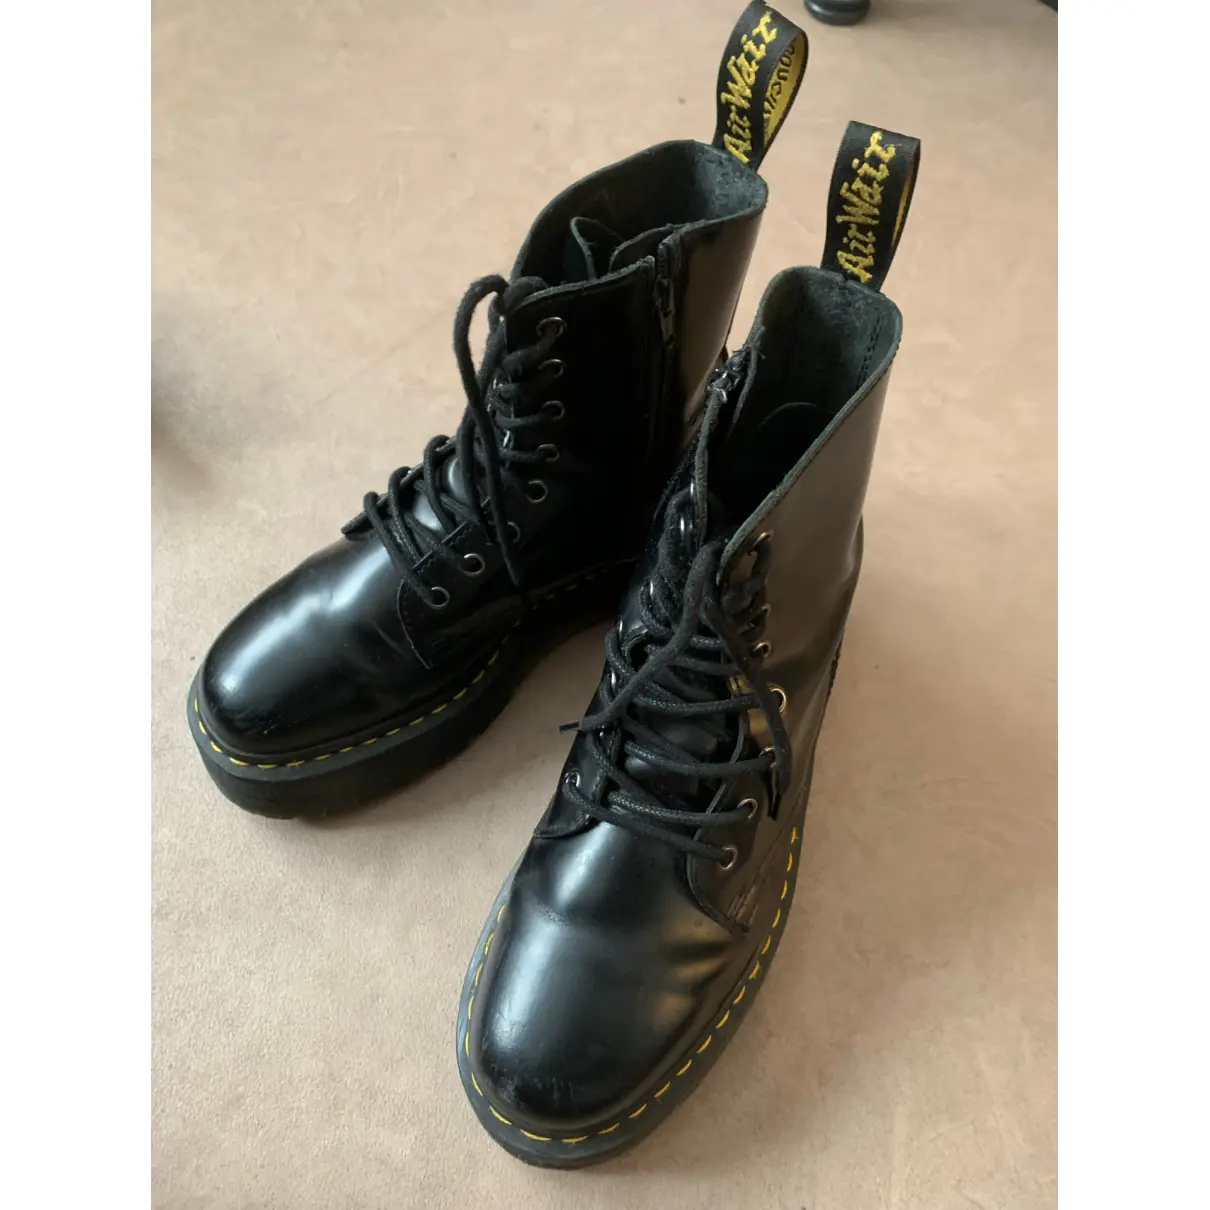 Buy Dr. Martens Jadon leather ankle boots online